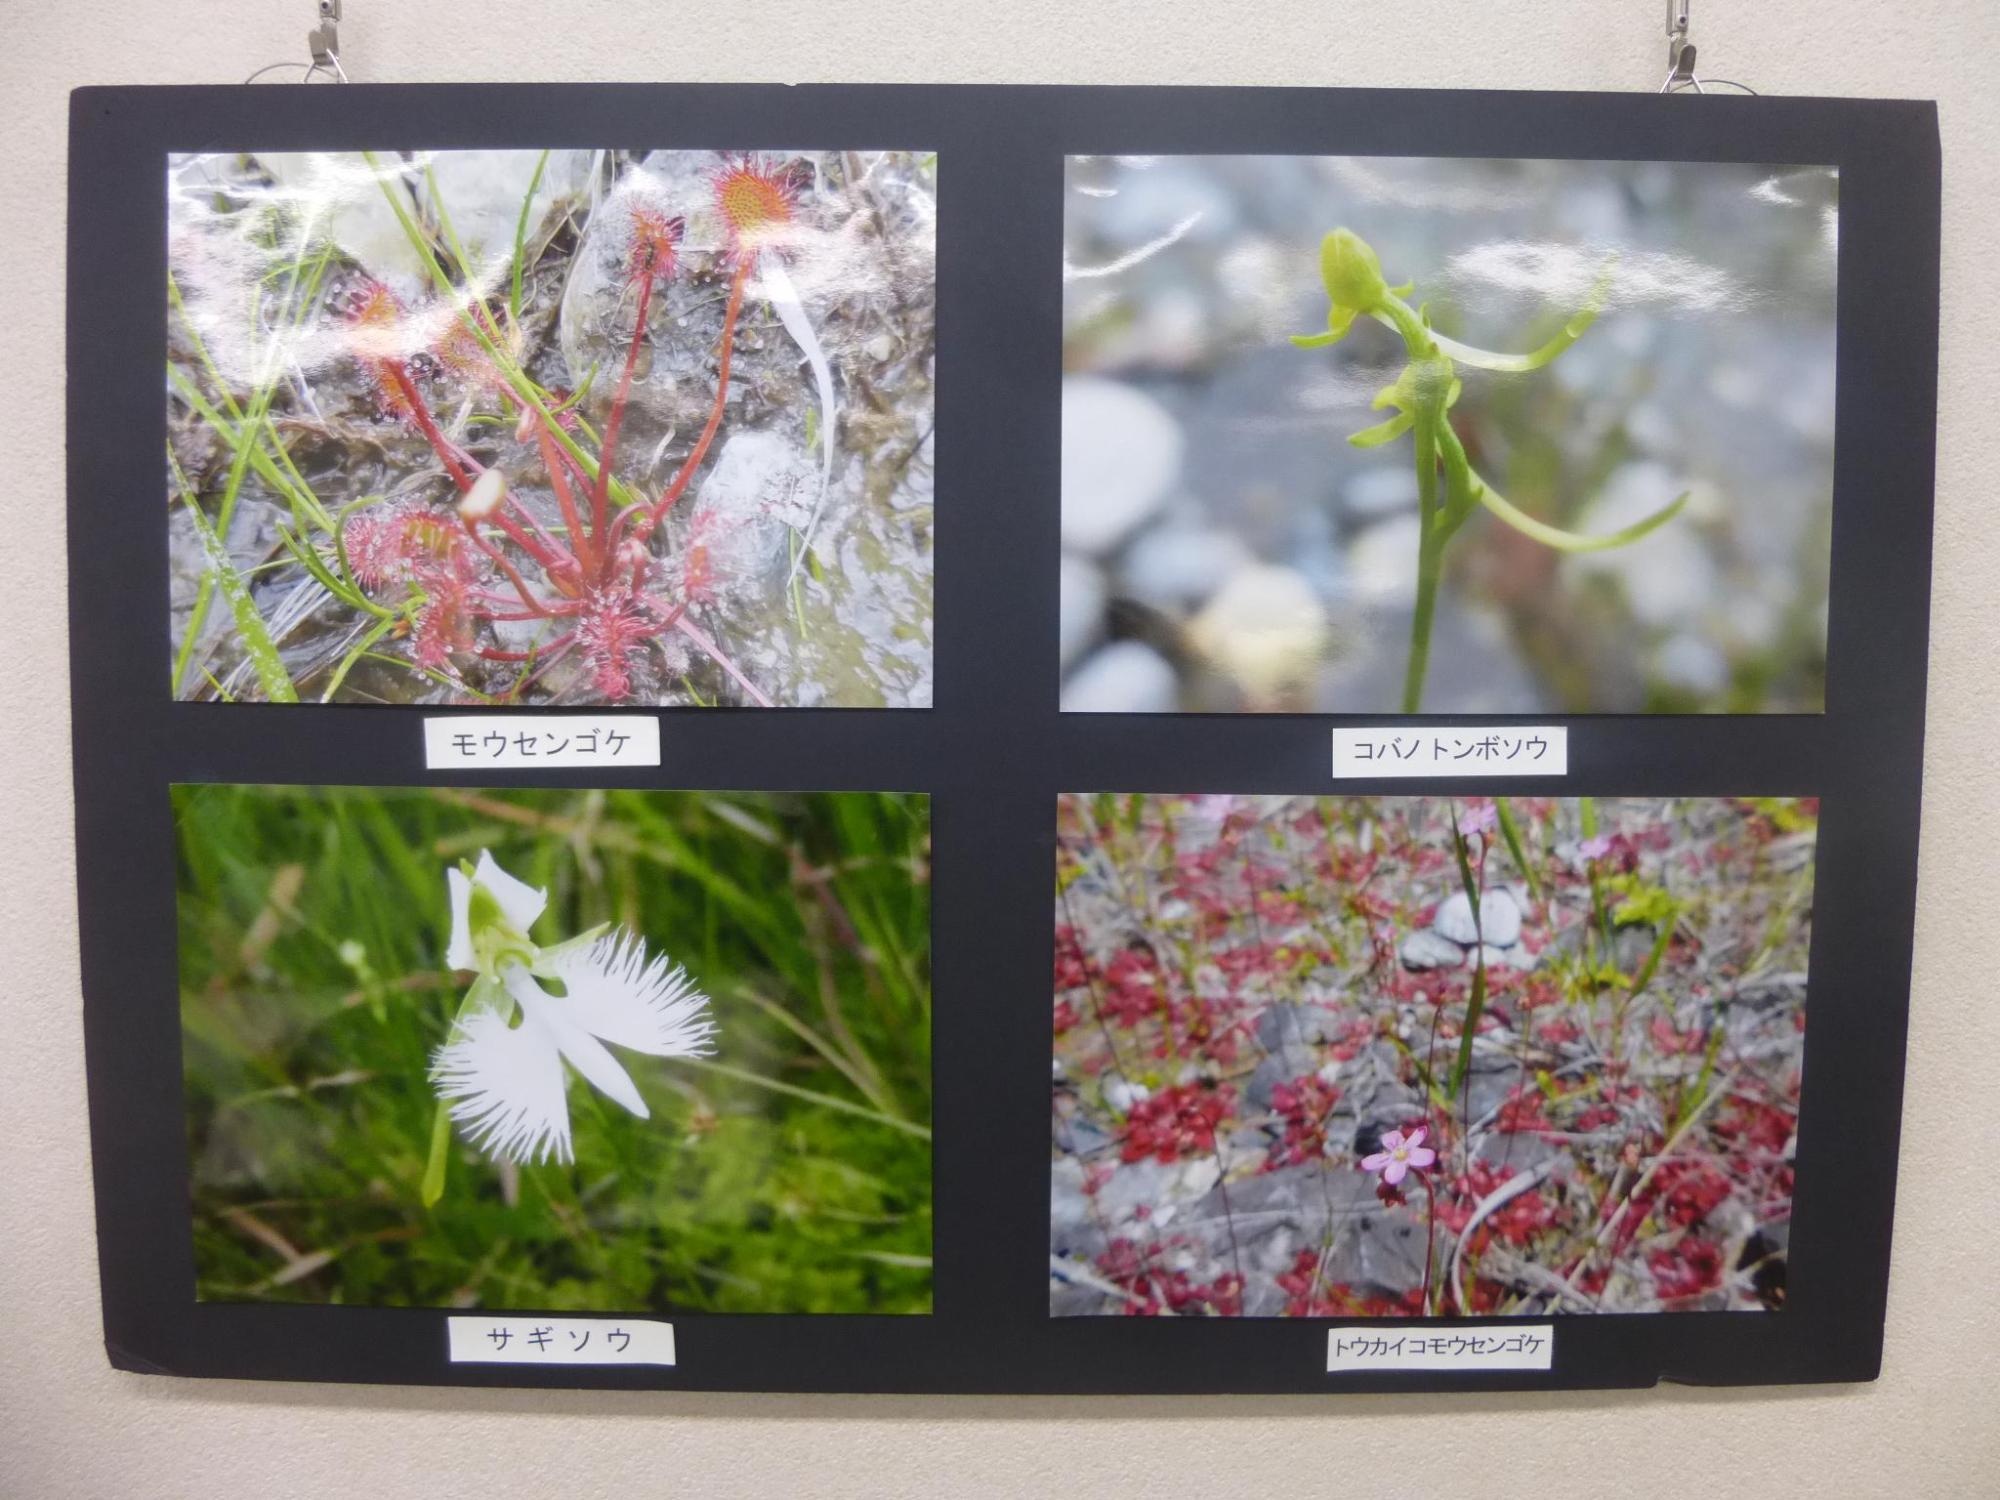 自然環境講座で使われた4枚の写真をまとめて写した写真